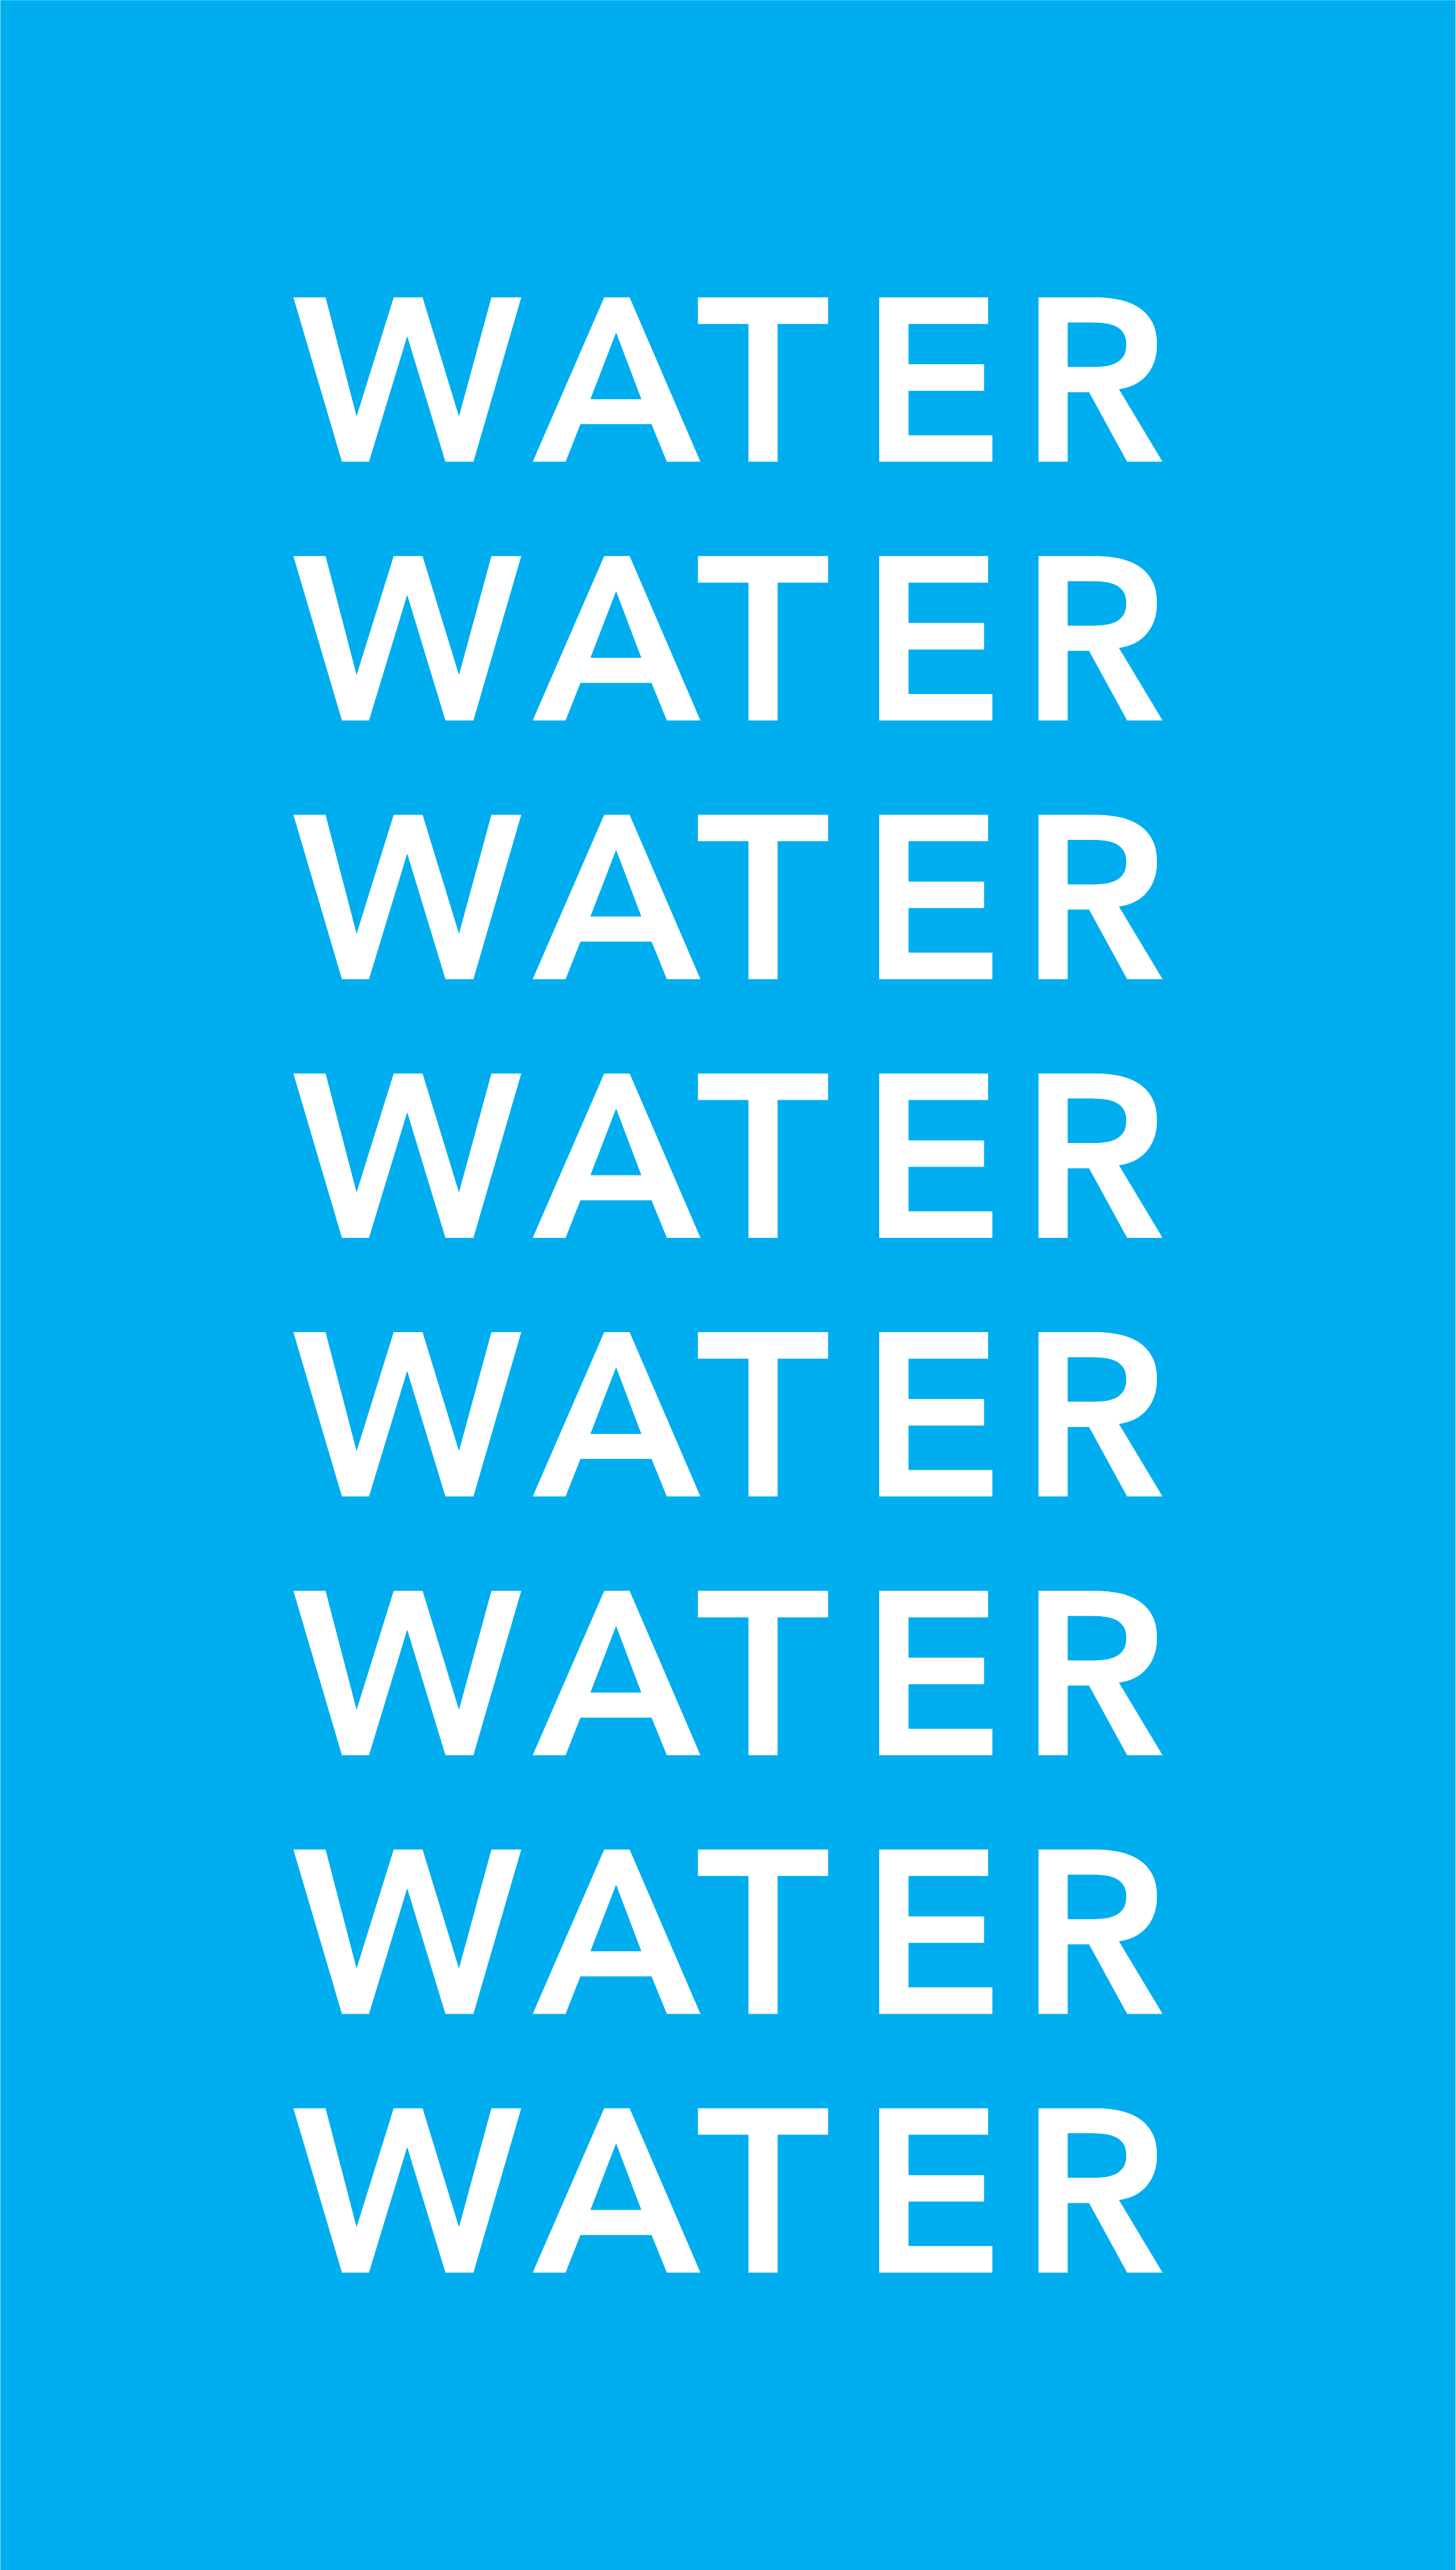 WATER WATER WATER WATER WATER WATER WATER